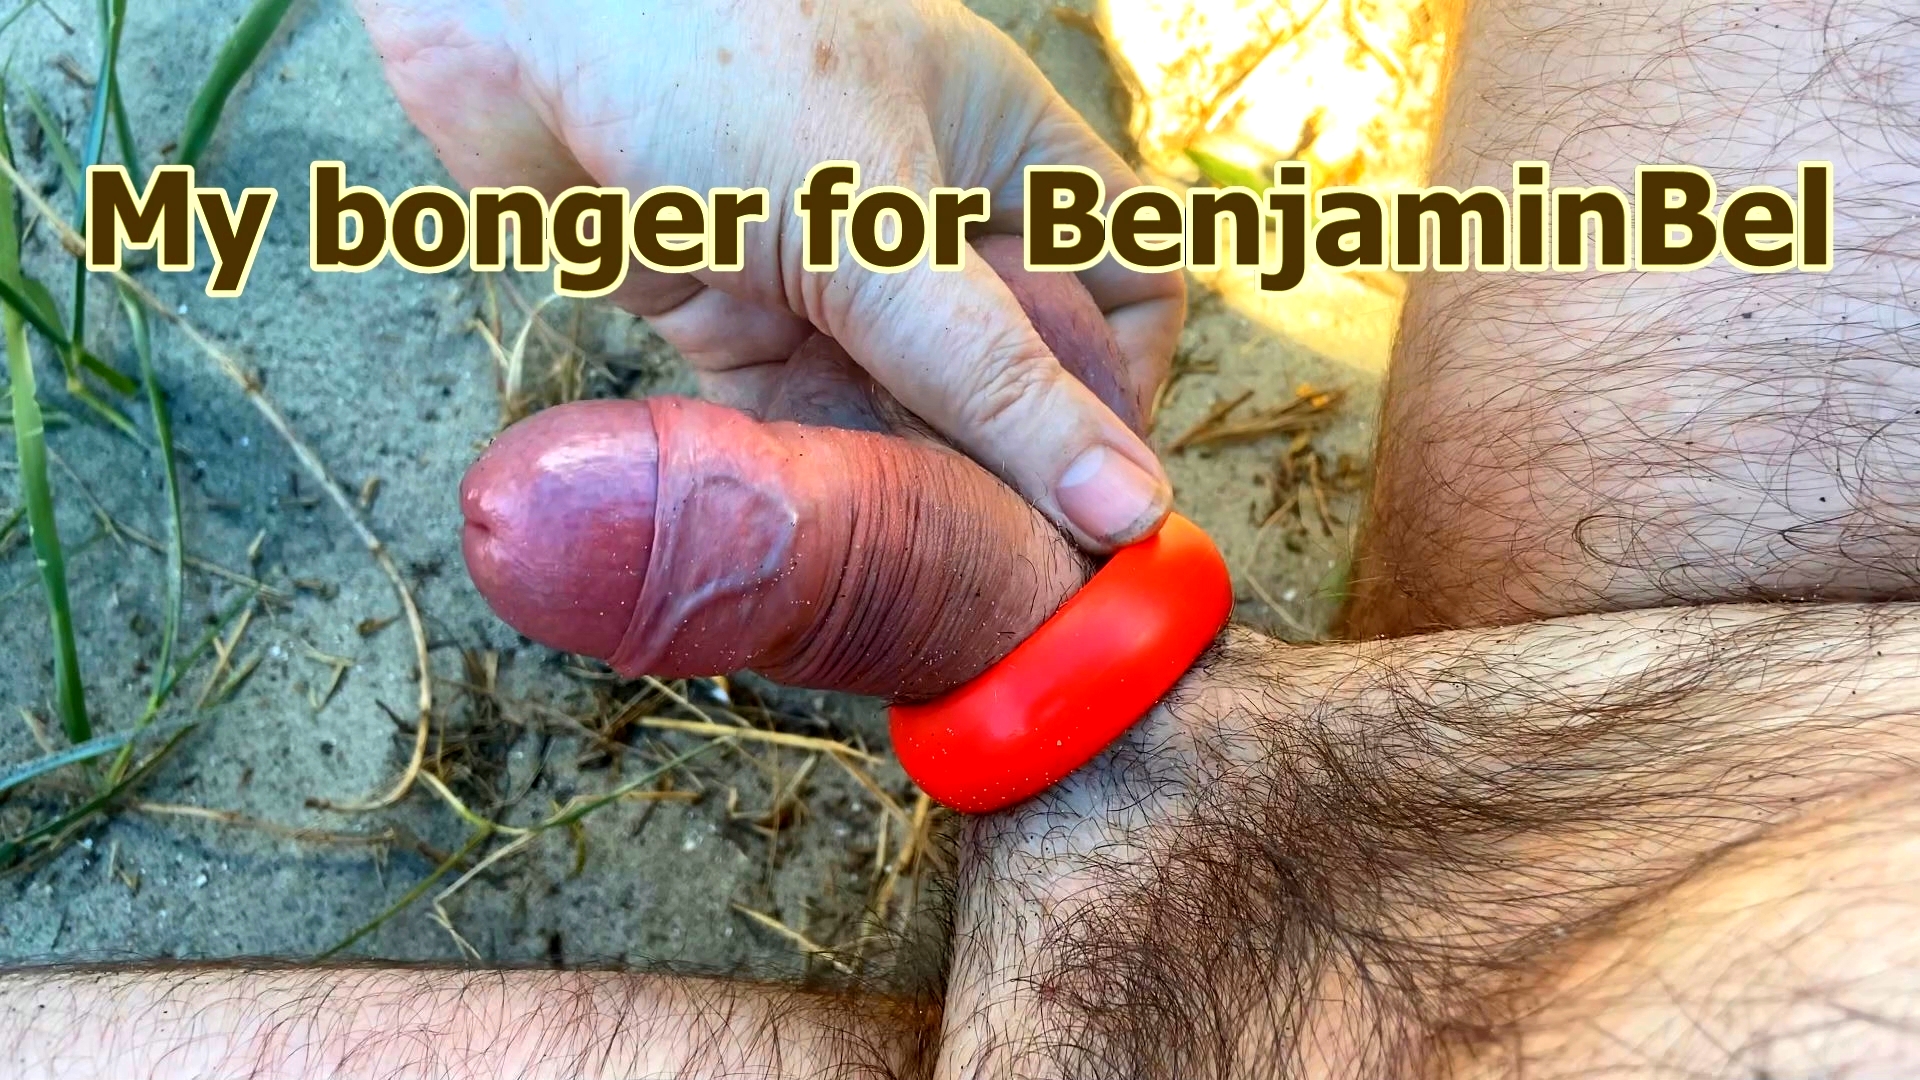 Testing BenjaminBel's genitals with my bonger